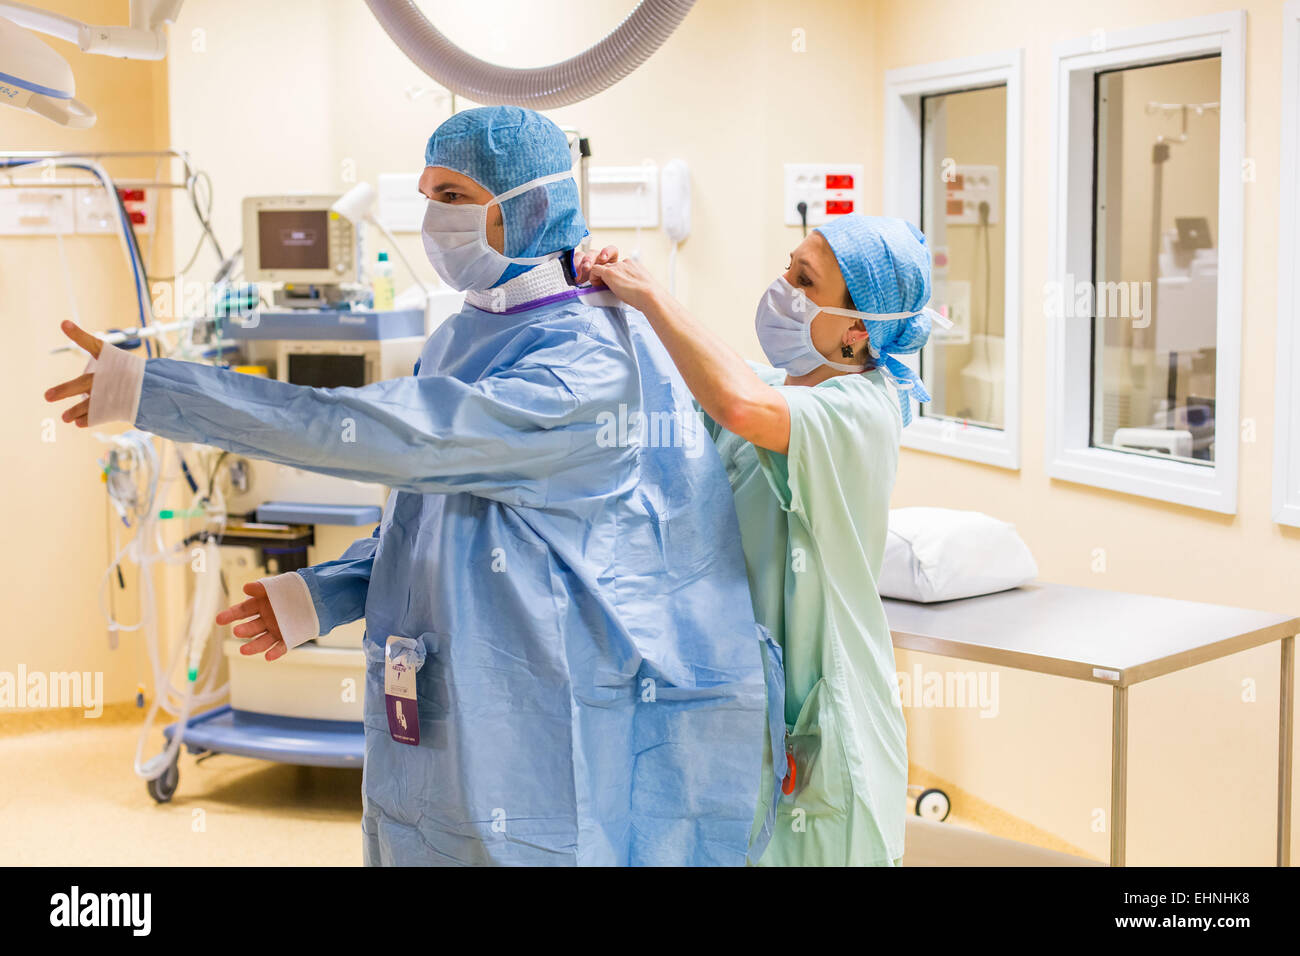 El equipo quirúrgico, vestirse antes de la cirugía, Hospital de Limoges, Francia Foto de stock